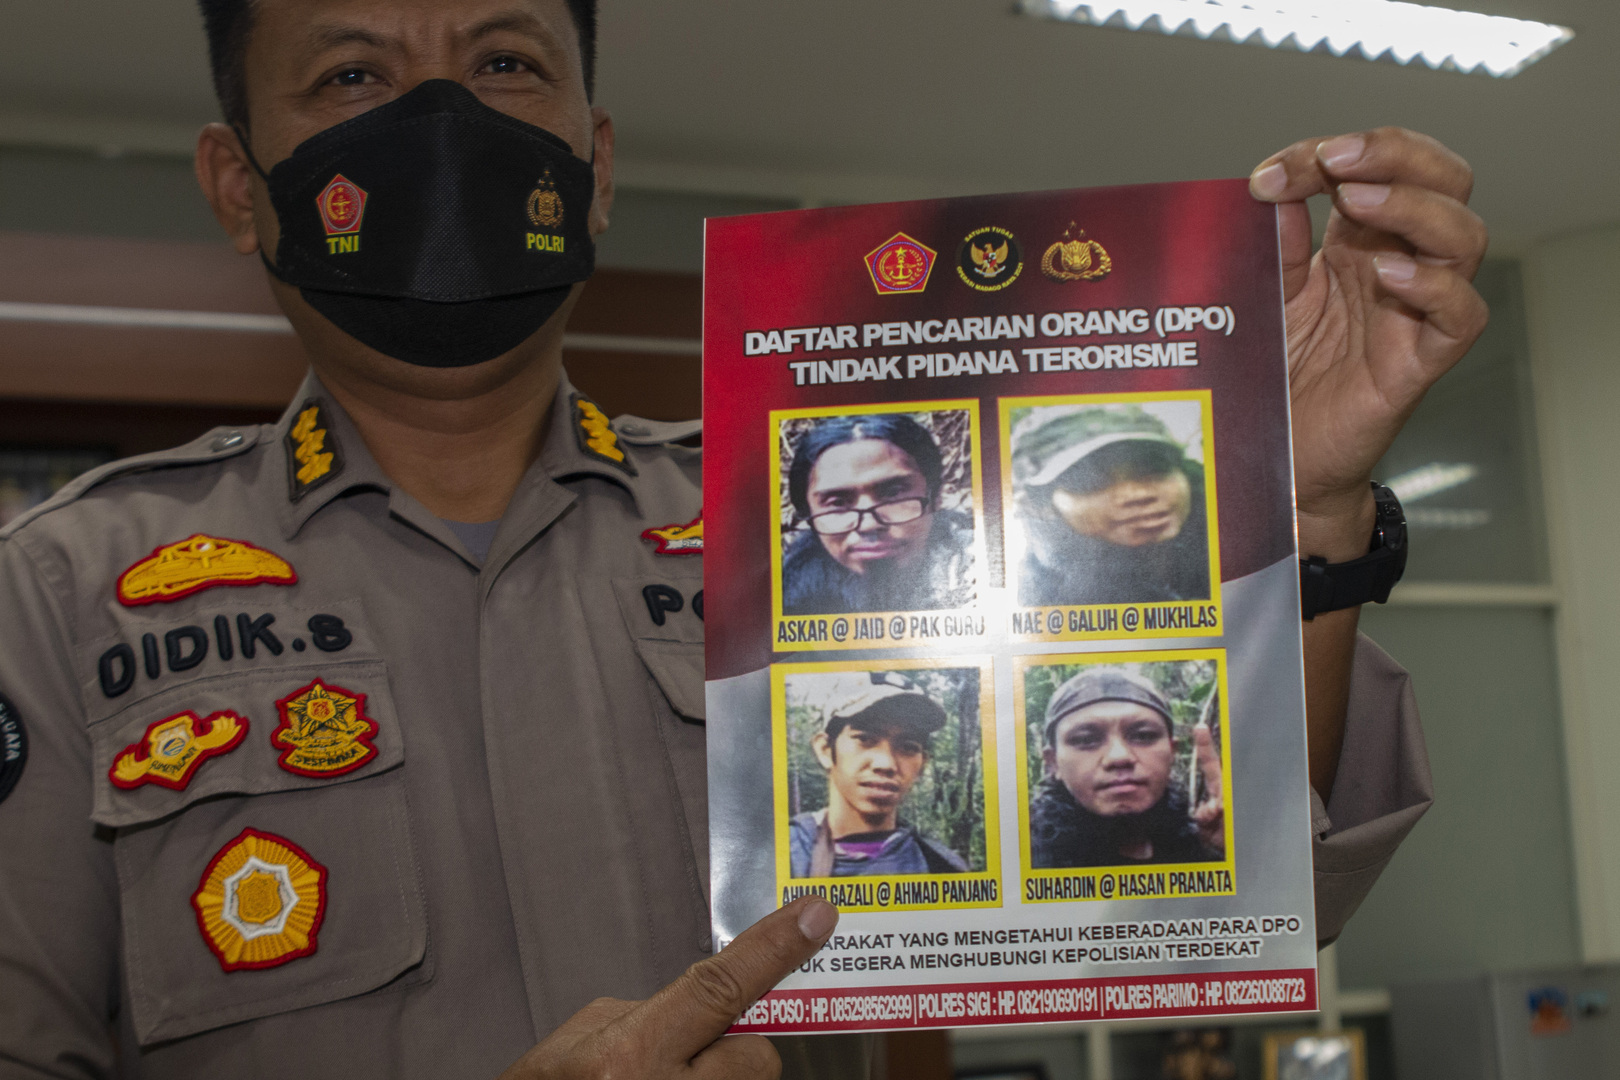 إندونيسيا: قوات الأمن تقتل مسلحا يشتبه بارتكابه عمليات قطع رأس